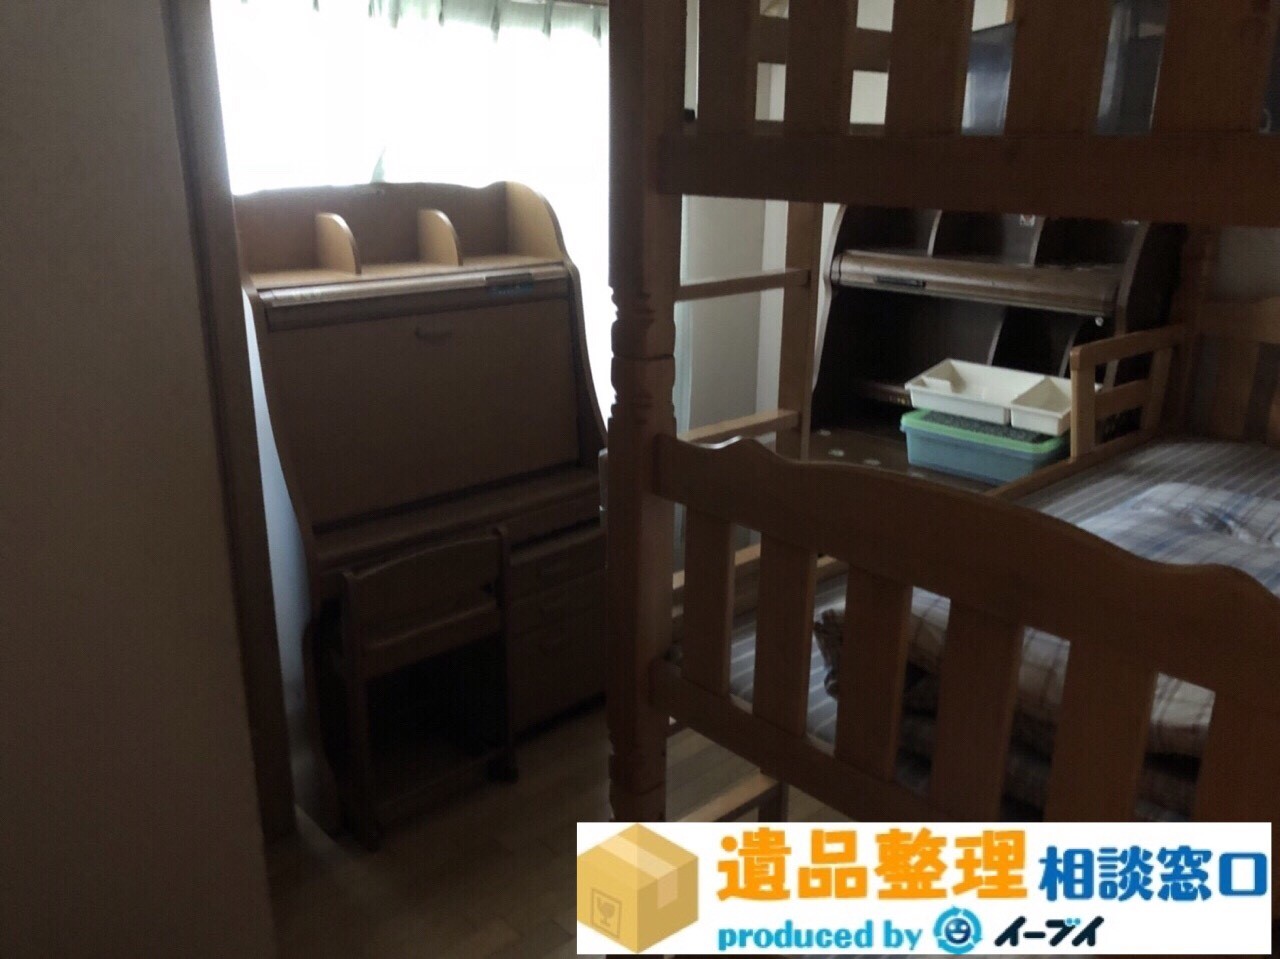 大阪府池田市で遺品整理作業に伴い子供部屋のベッドなど片付けました。のアイキャッチ